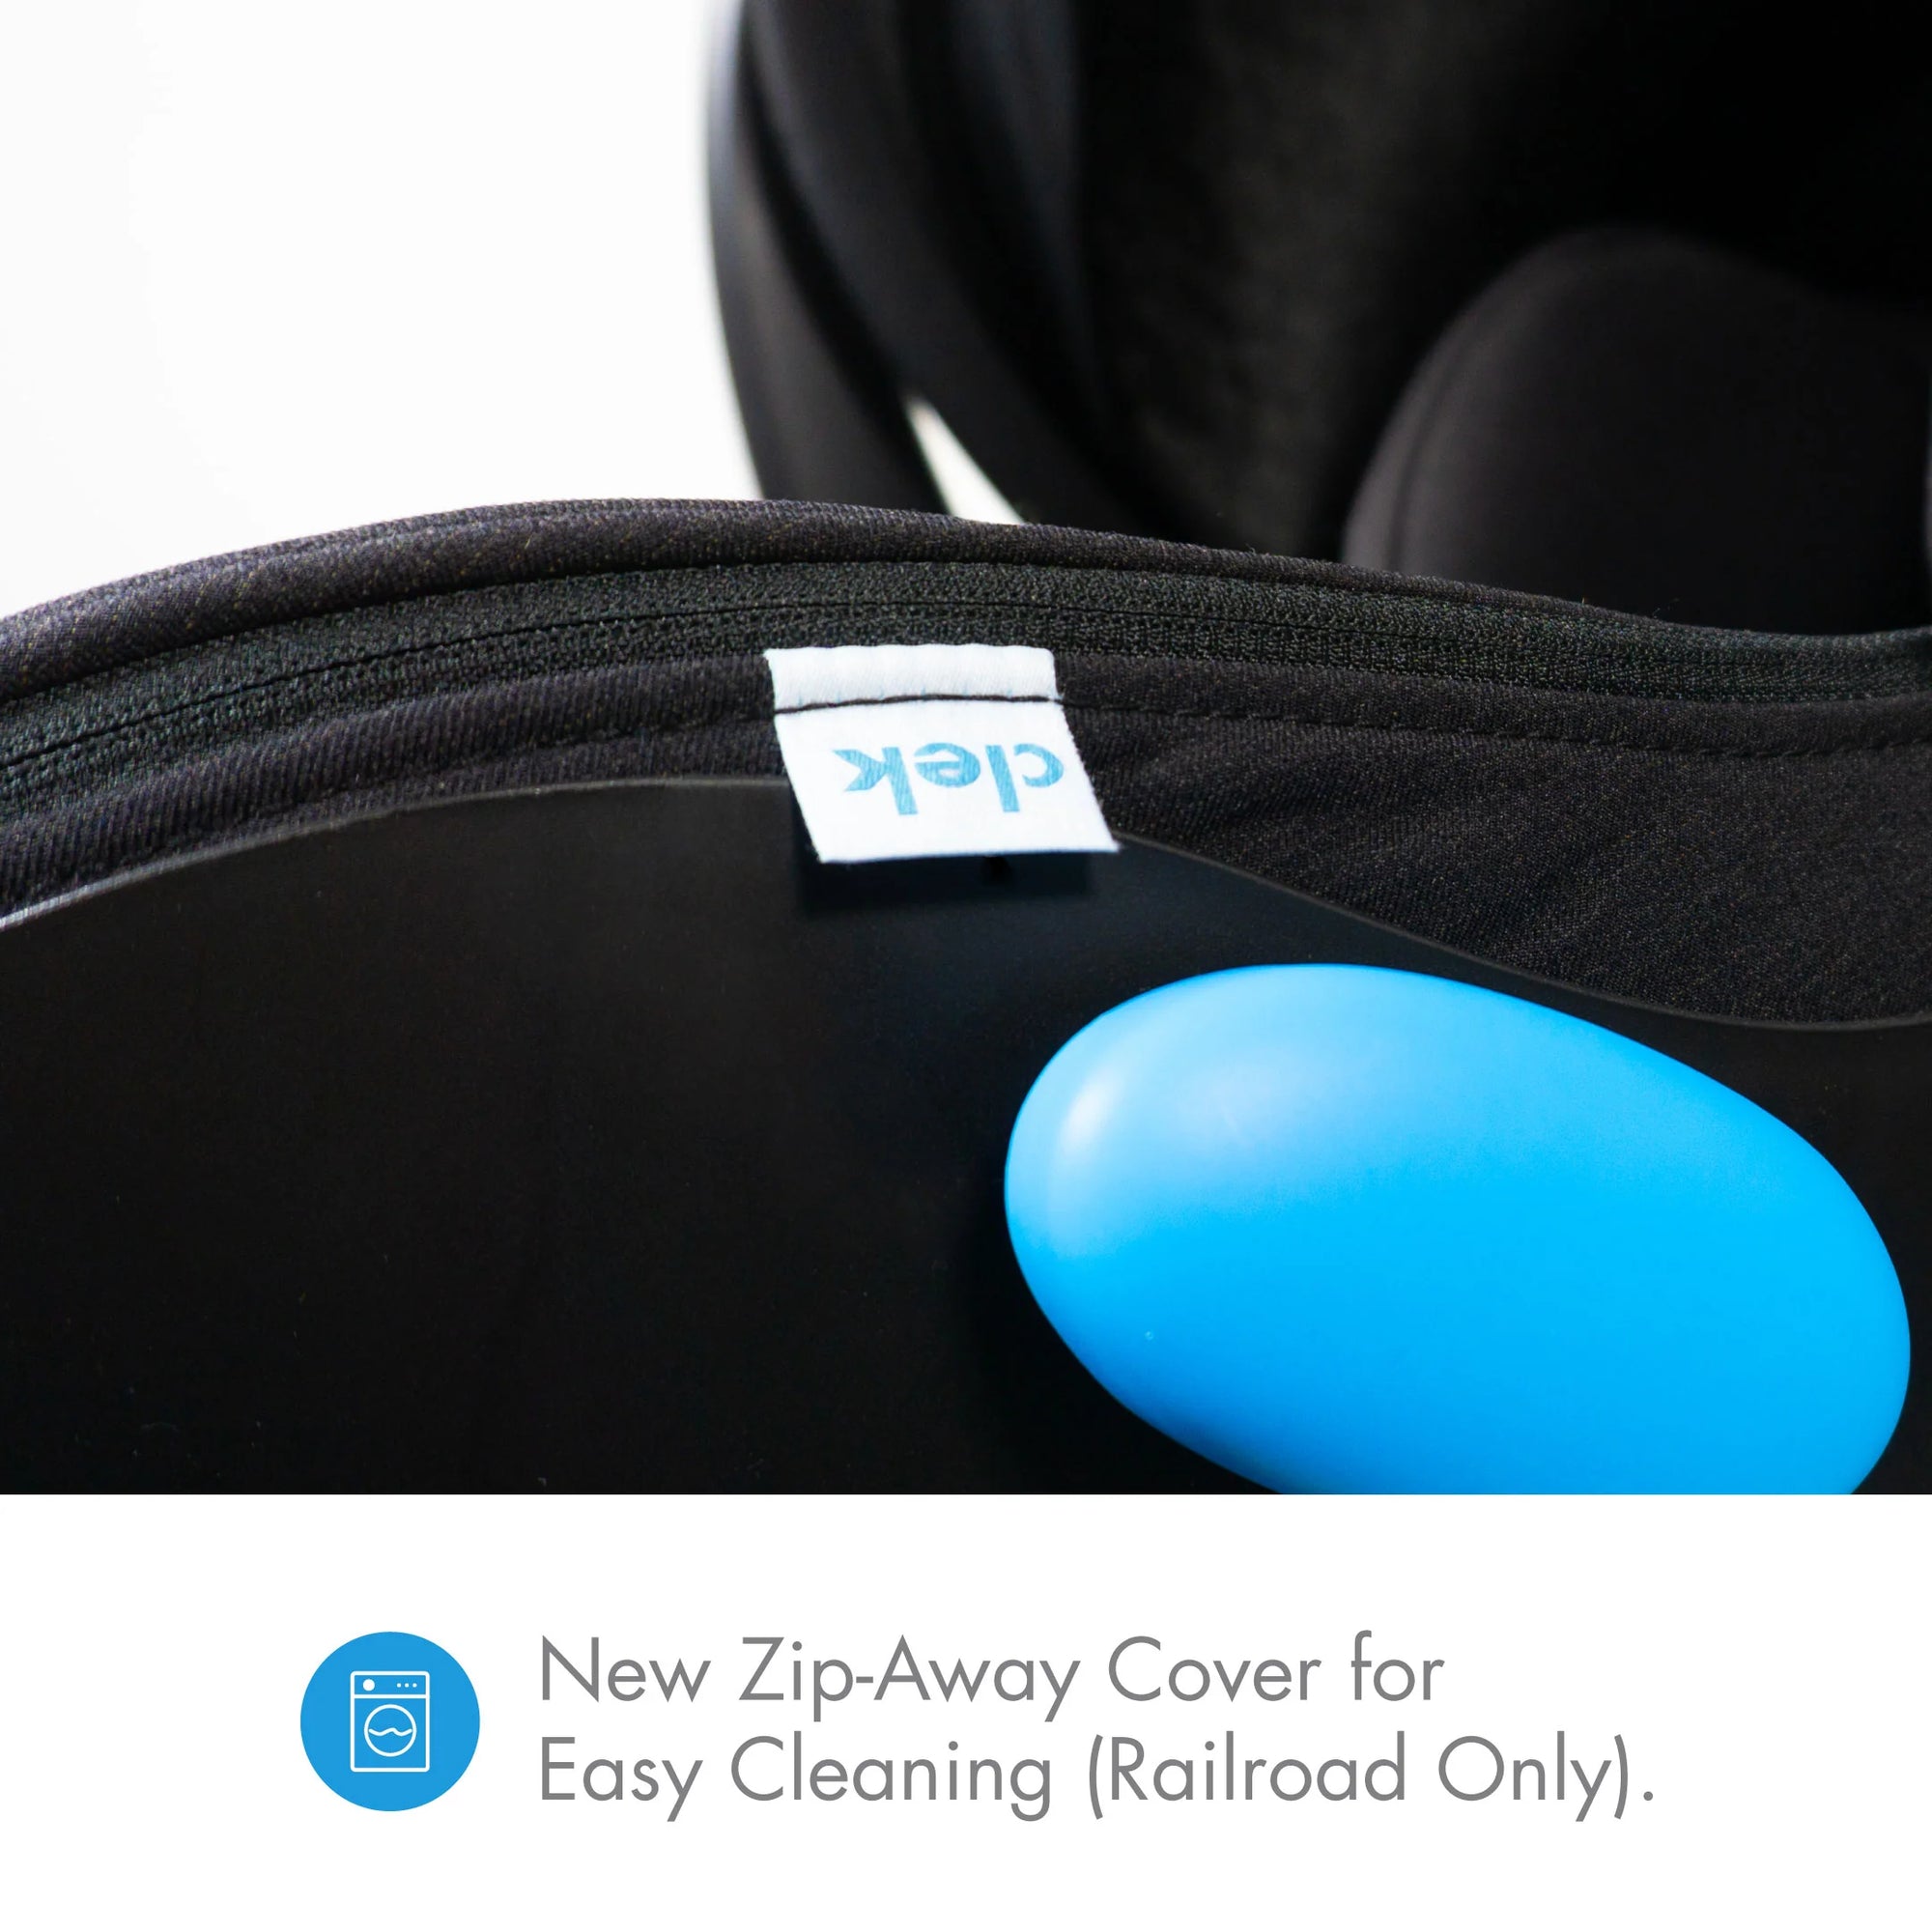 Clek Liing Infant Car Seat - Railroad Ziip Flame Retardant Free (Jersey Knit) 2